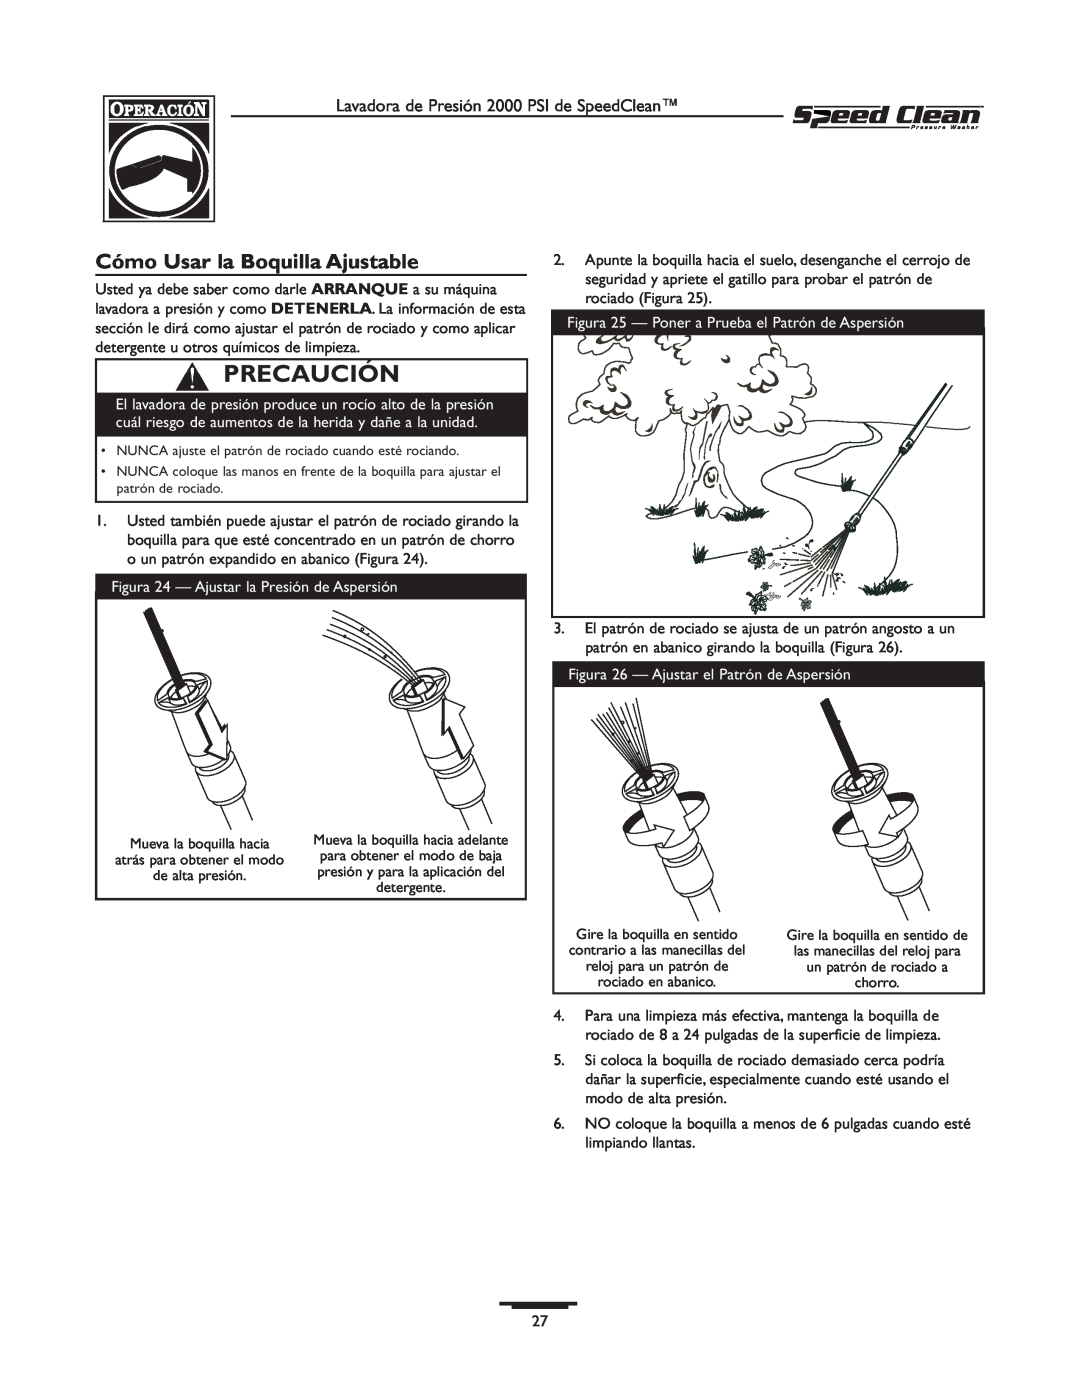 Briggs & Stratton 020211-0 owner manual Cómo Usar la Boquilla Ajustable, Precaución 